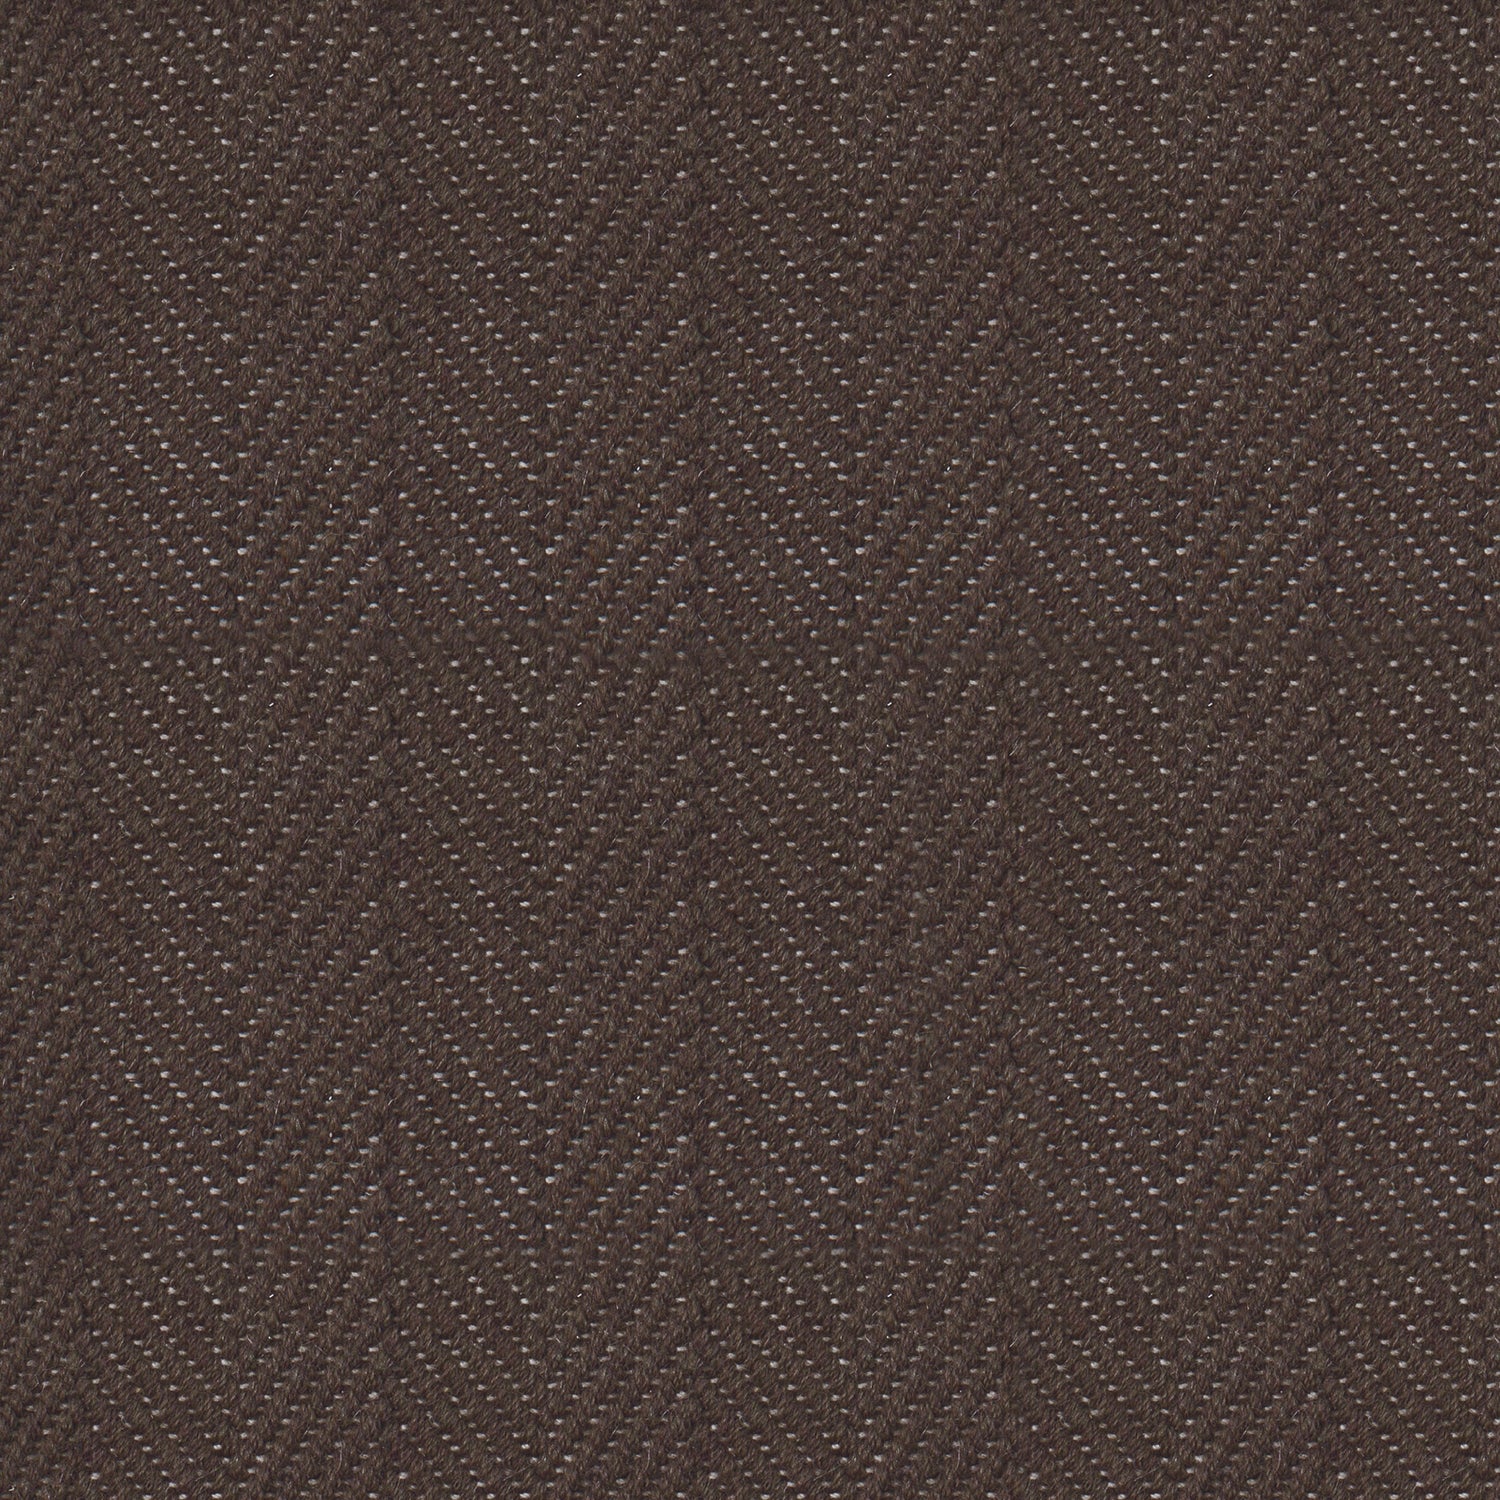 Wool broadloom carpet swatch in a herringbone weave in brown.